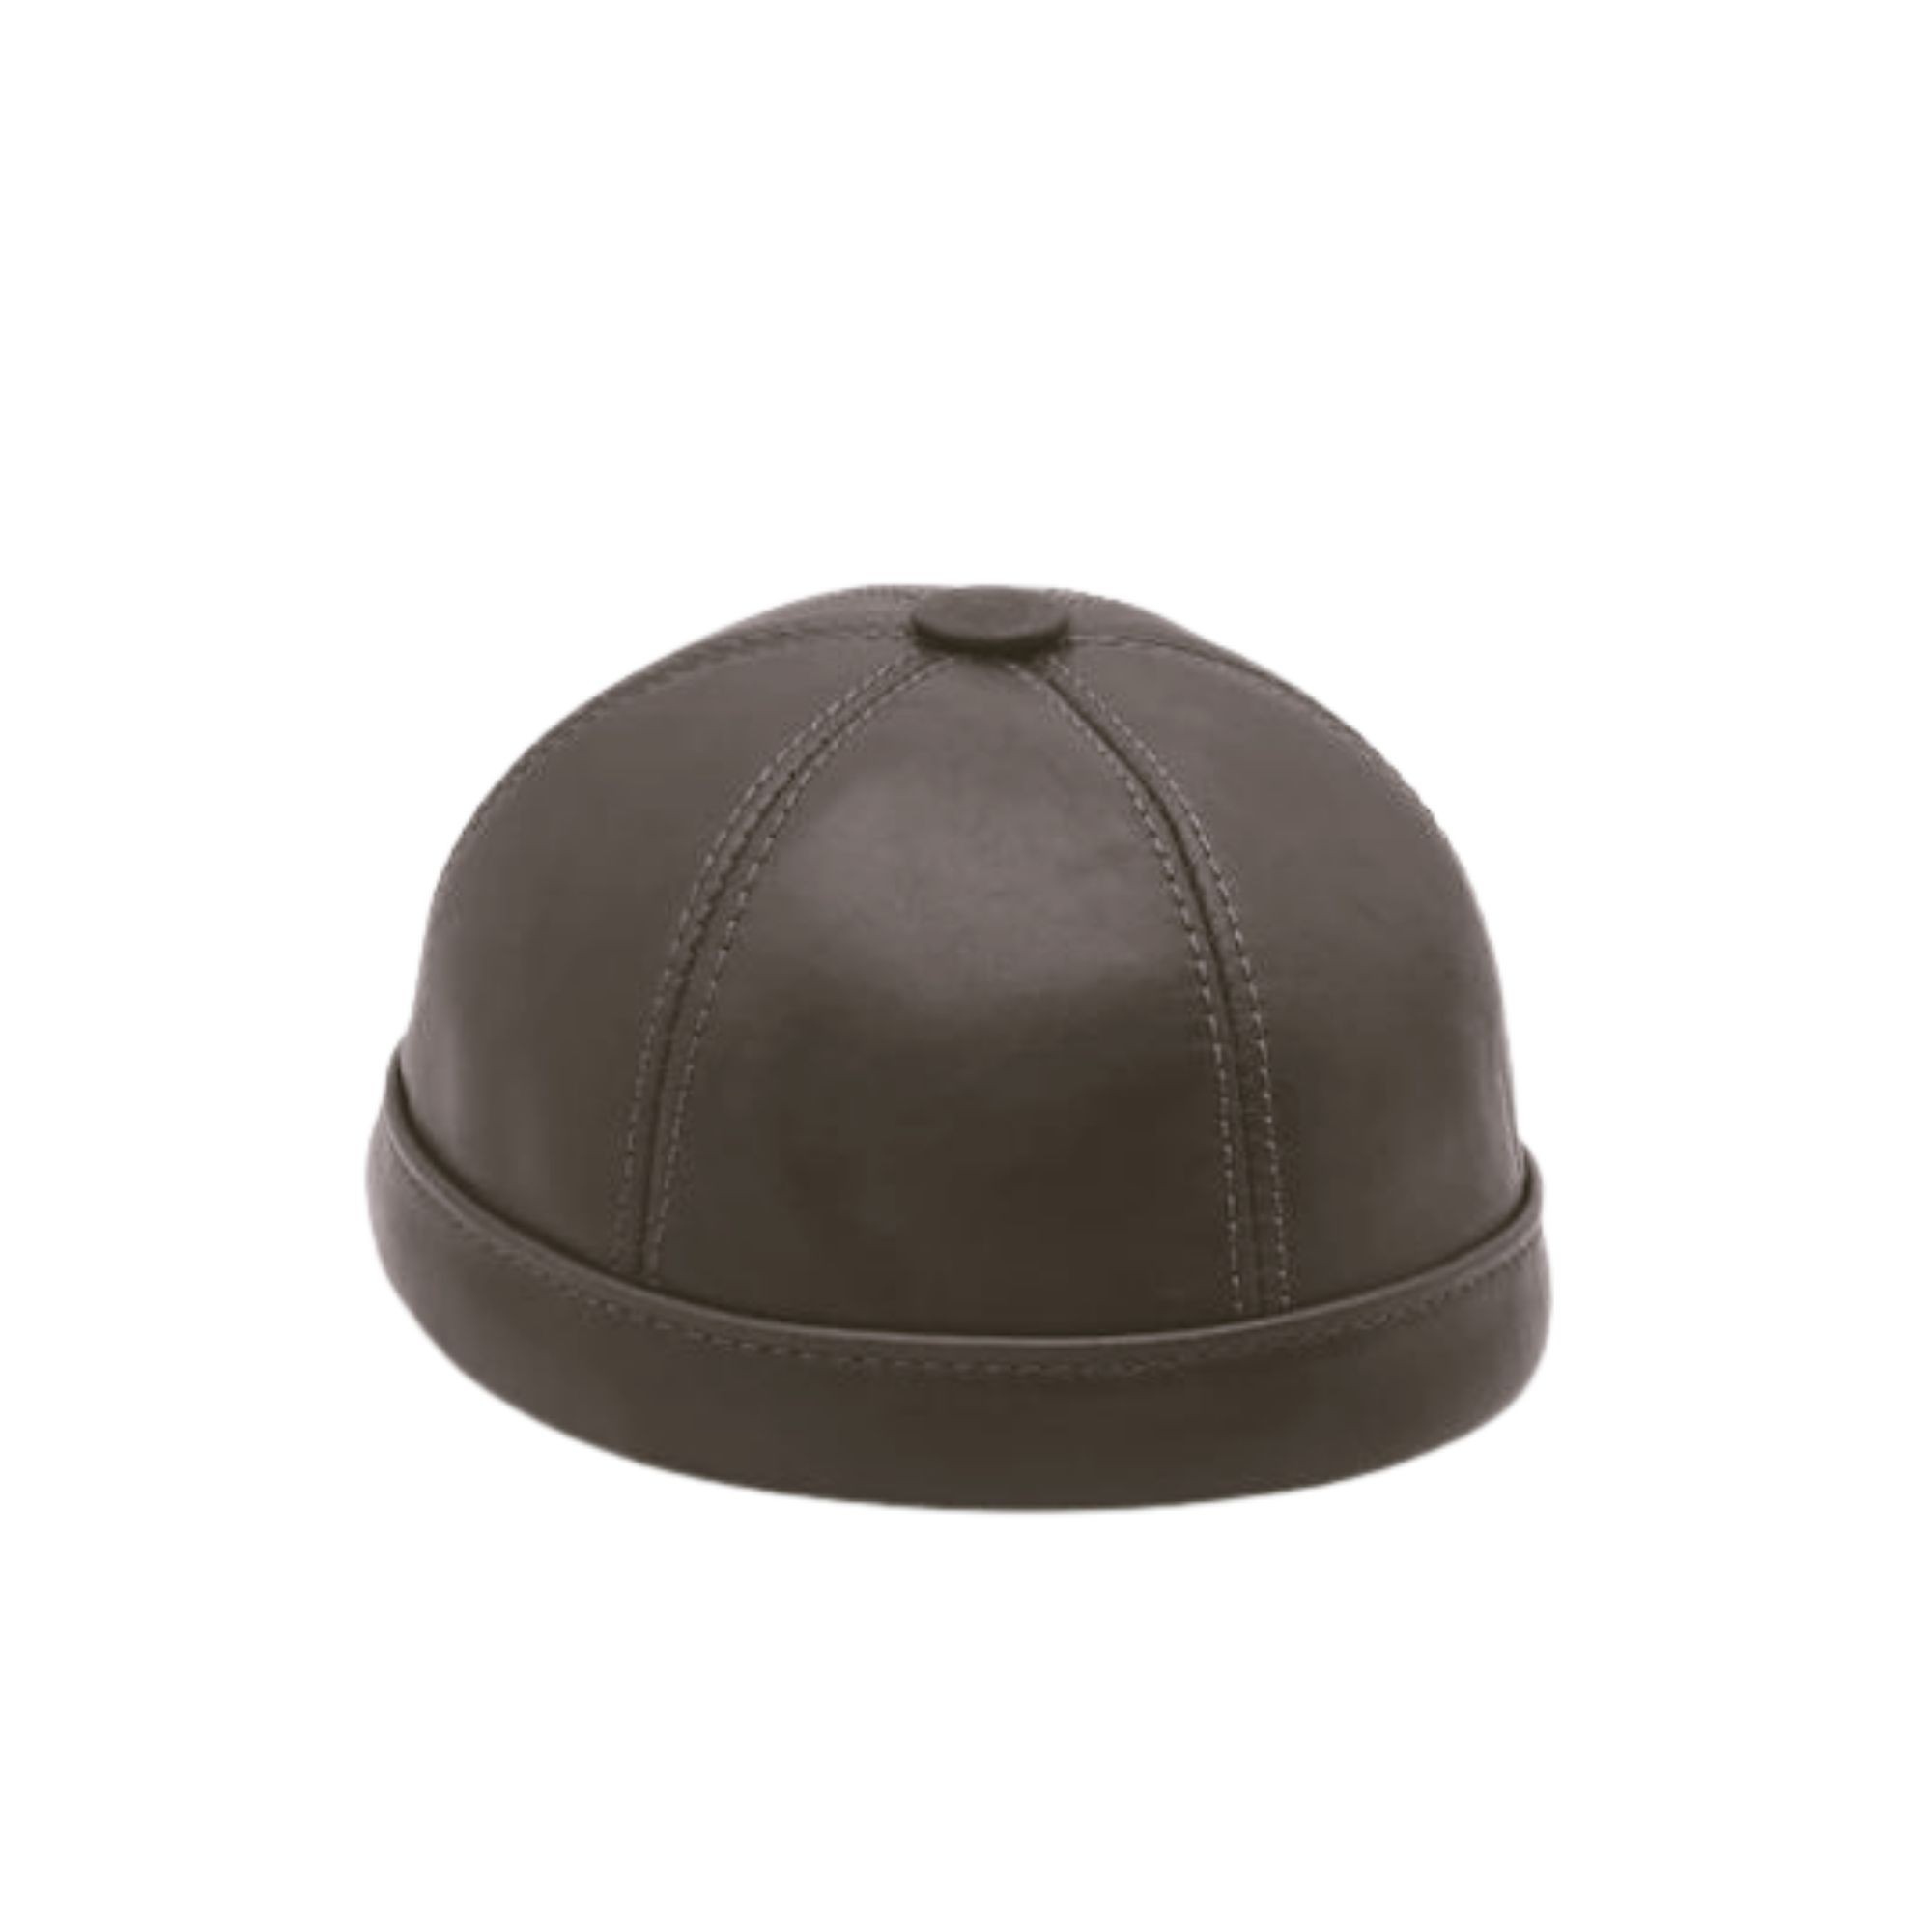 TwinGold Kişiye Özel %100 Gerçek Deri Docker Şapka - Kahverengi